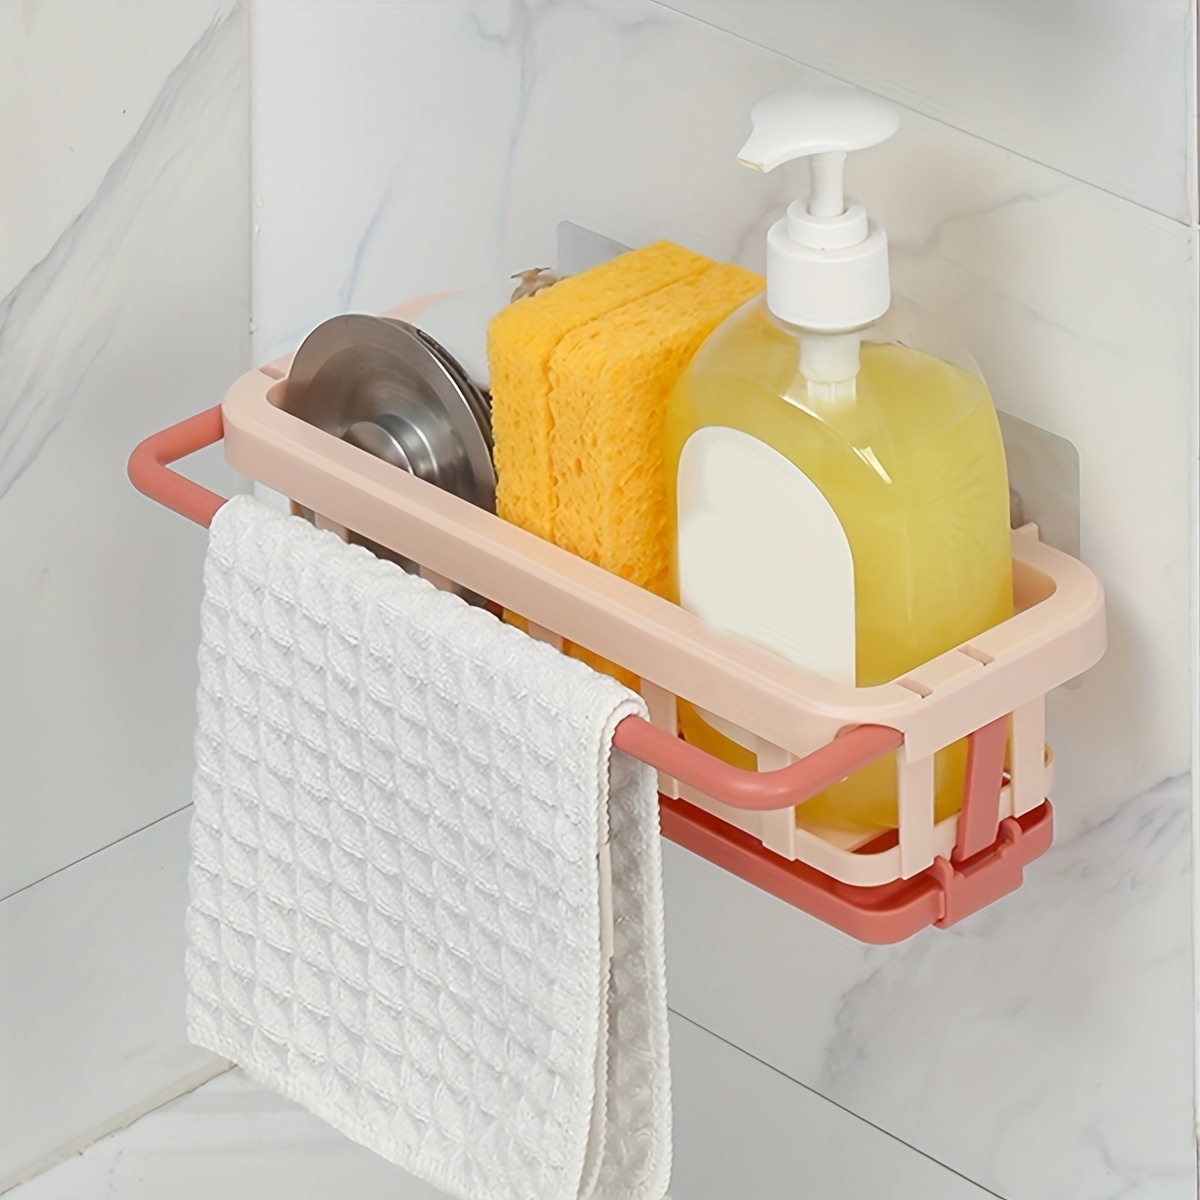  VANTEN Kitchen Sink Caddy Sponge Holder Sink Organizer, Sink  Tray Drainer Rack, Soap Dish Dispenser Brush Holder Storage Accessories  -Countertop or Adhesive